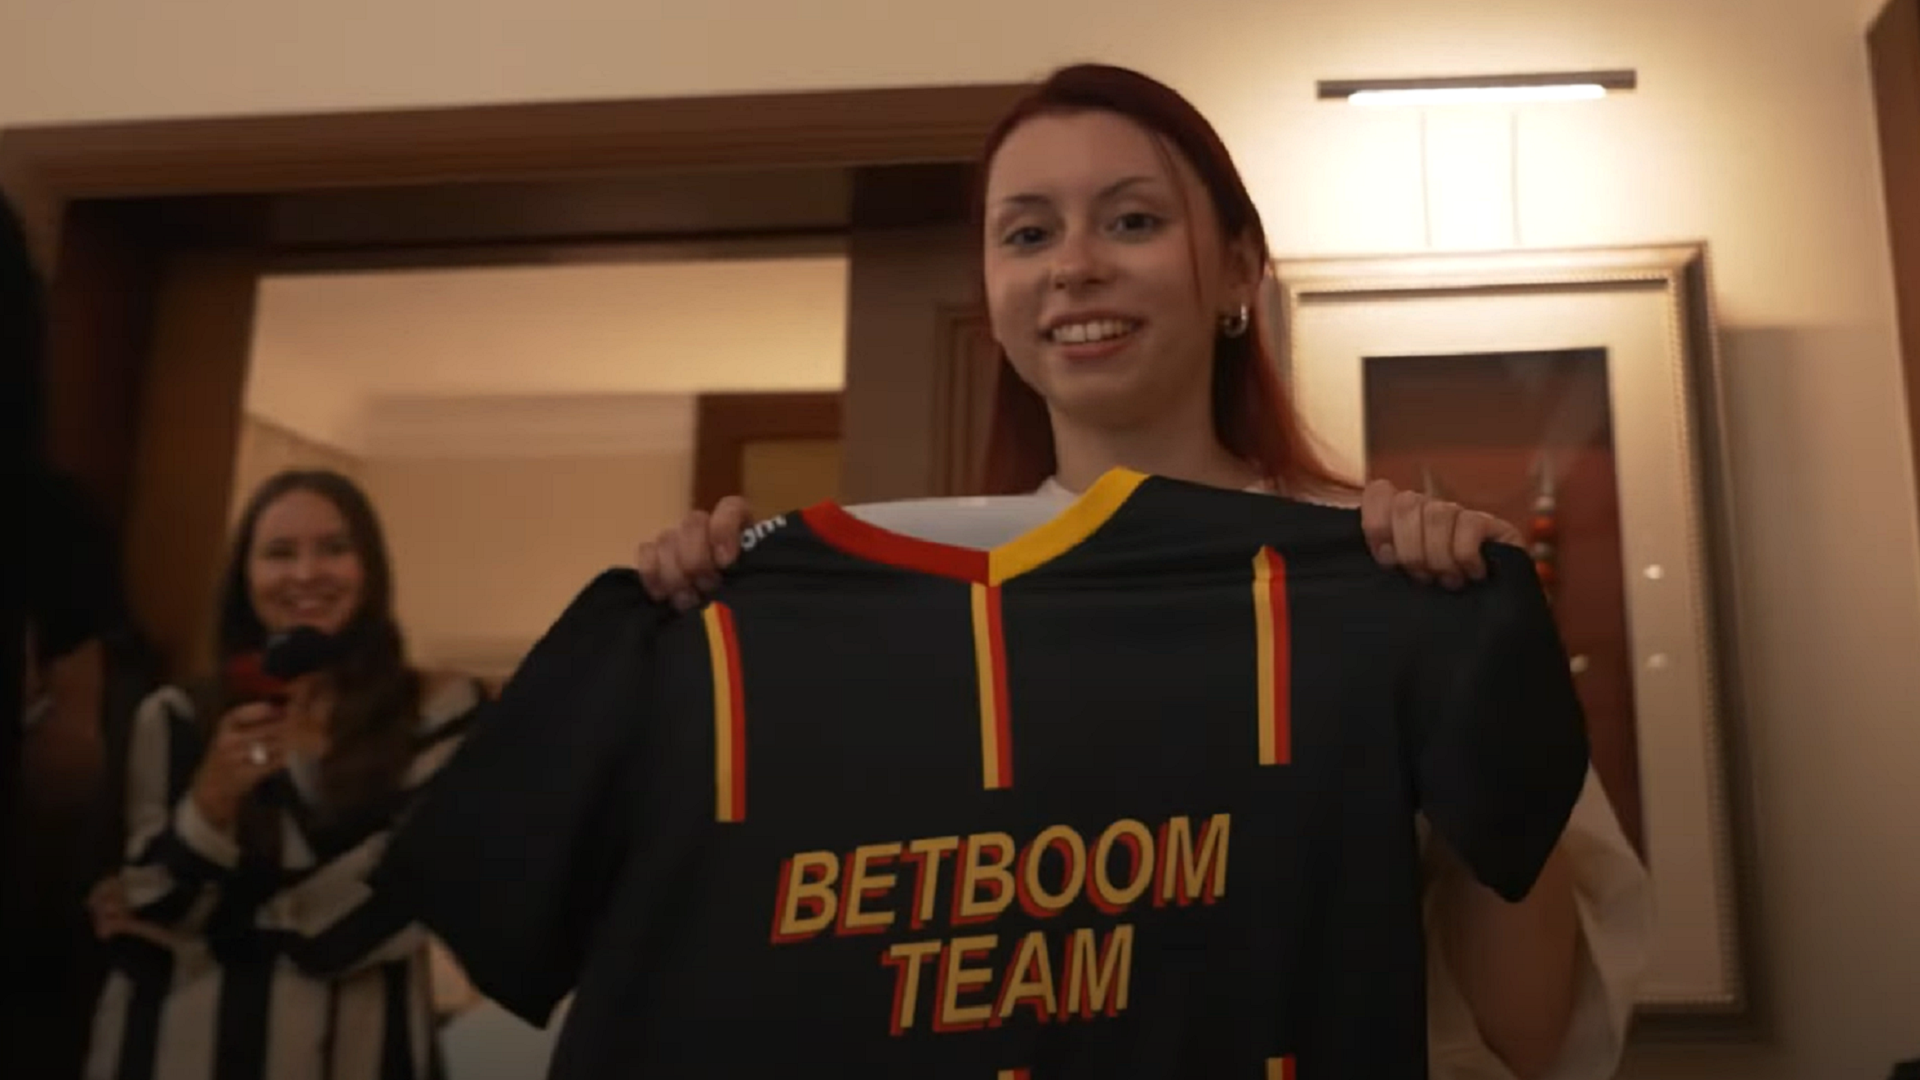 Дора посетила практис BetBoom Team и получила в подарок форму команды